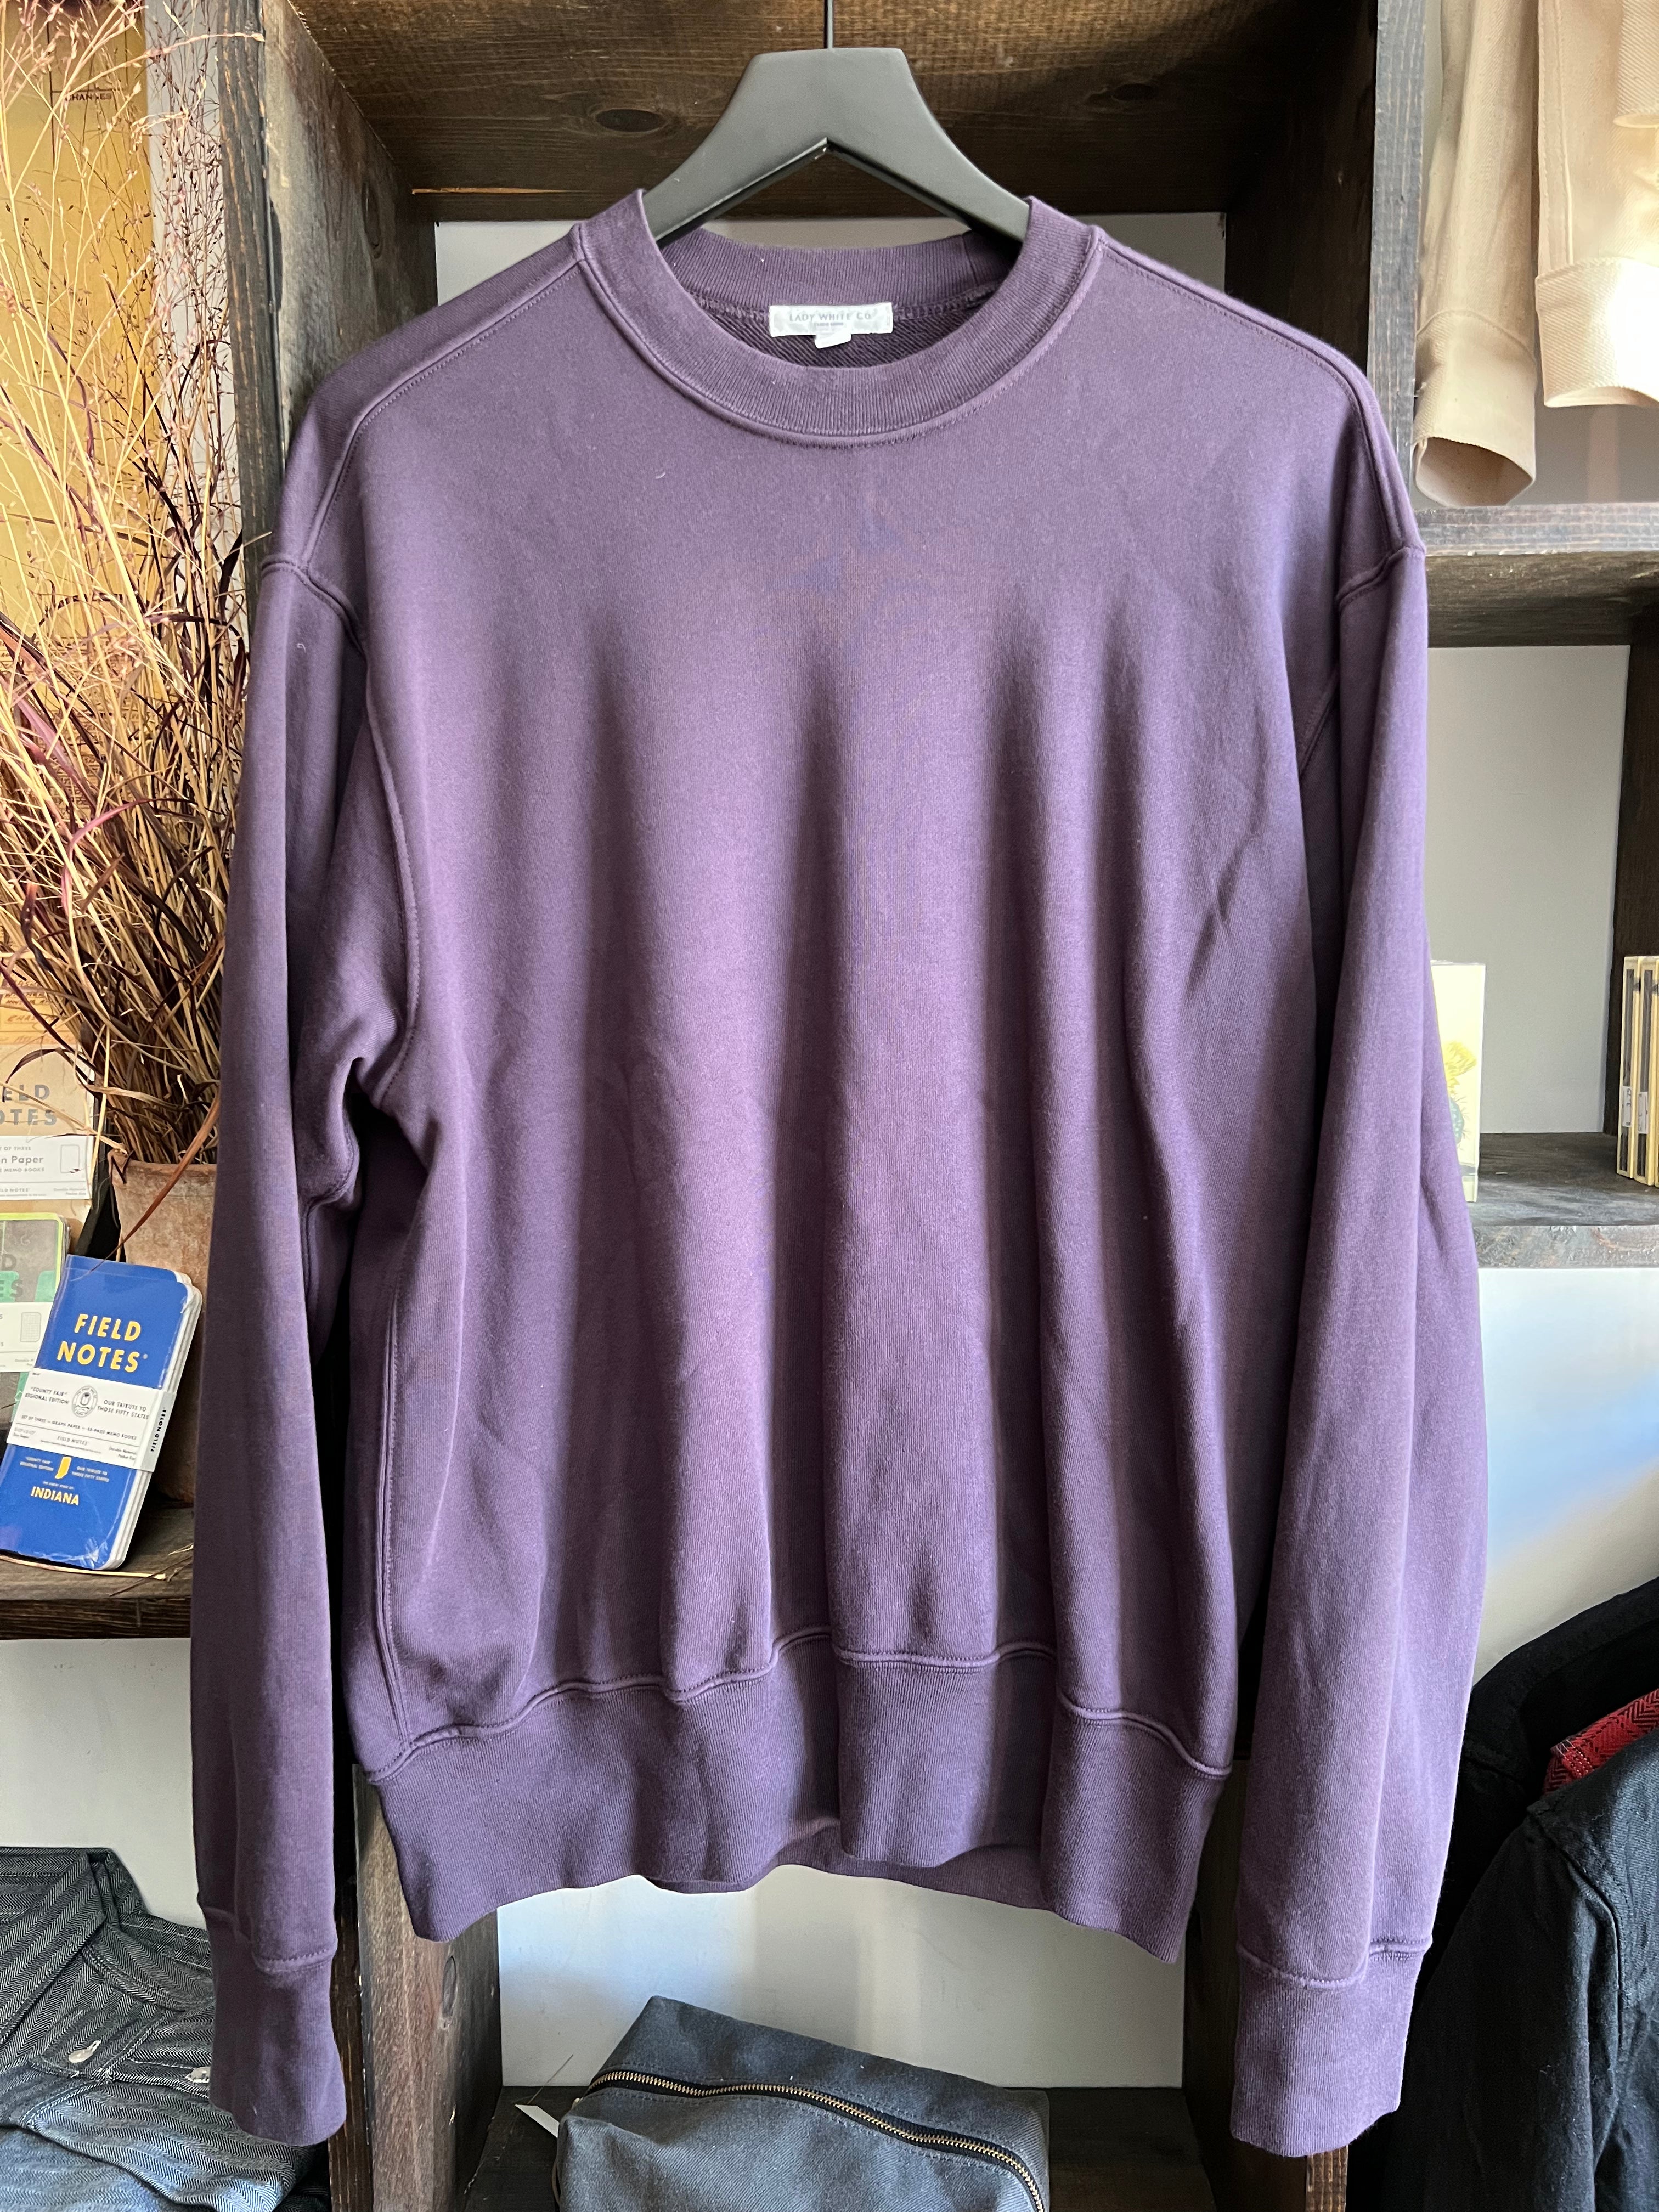 Gently Used Lady White Co. Relaxed Sweatshirt - 38/Medium - Eggplant Purple